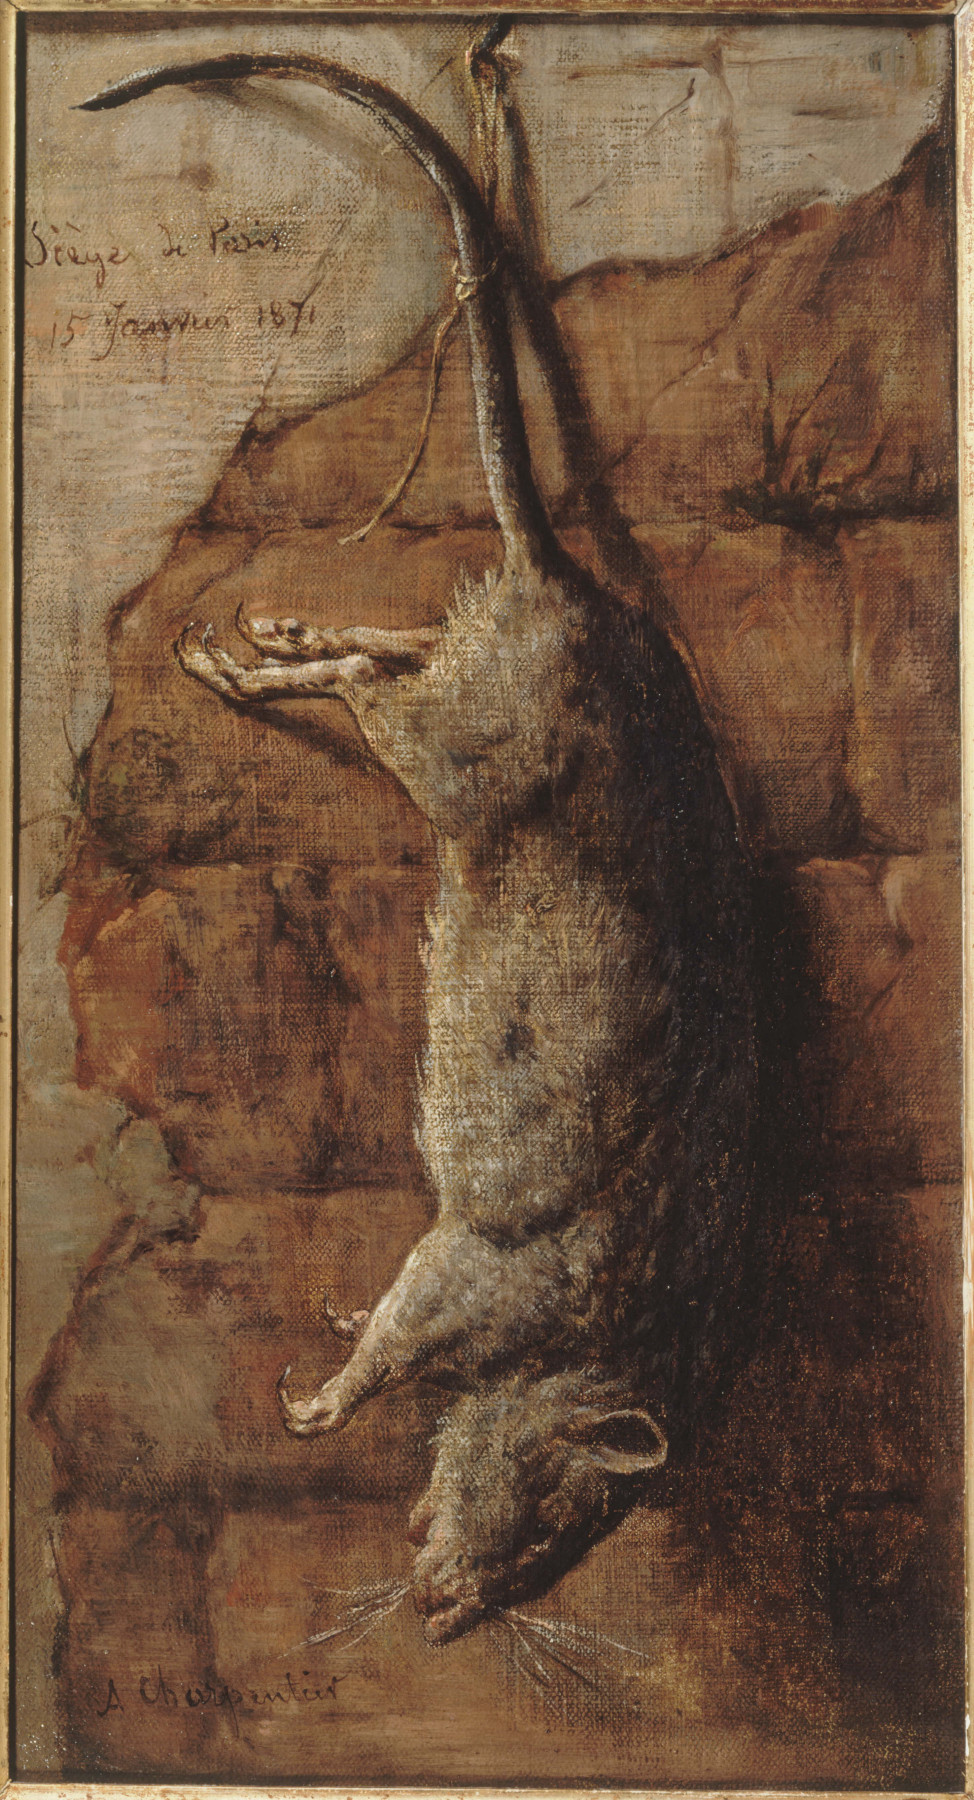 Ein Gemälde zeigt eine Ratte vor einem bräunlichen Hintergrund. Sie hängt kopfüber und ihr Schwanz ist mit einem Stück Schnur an einen Nagel gebunden.